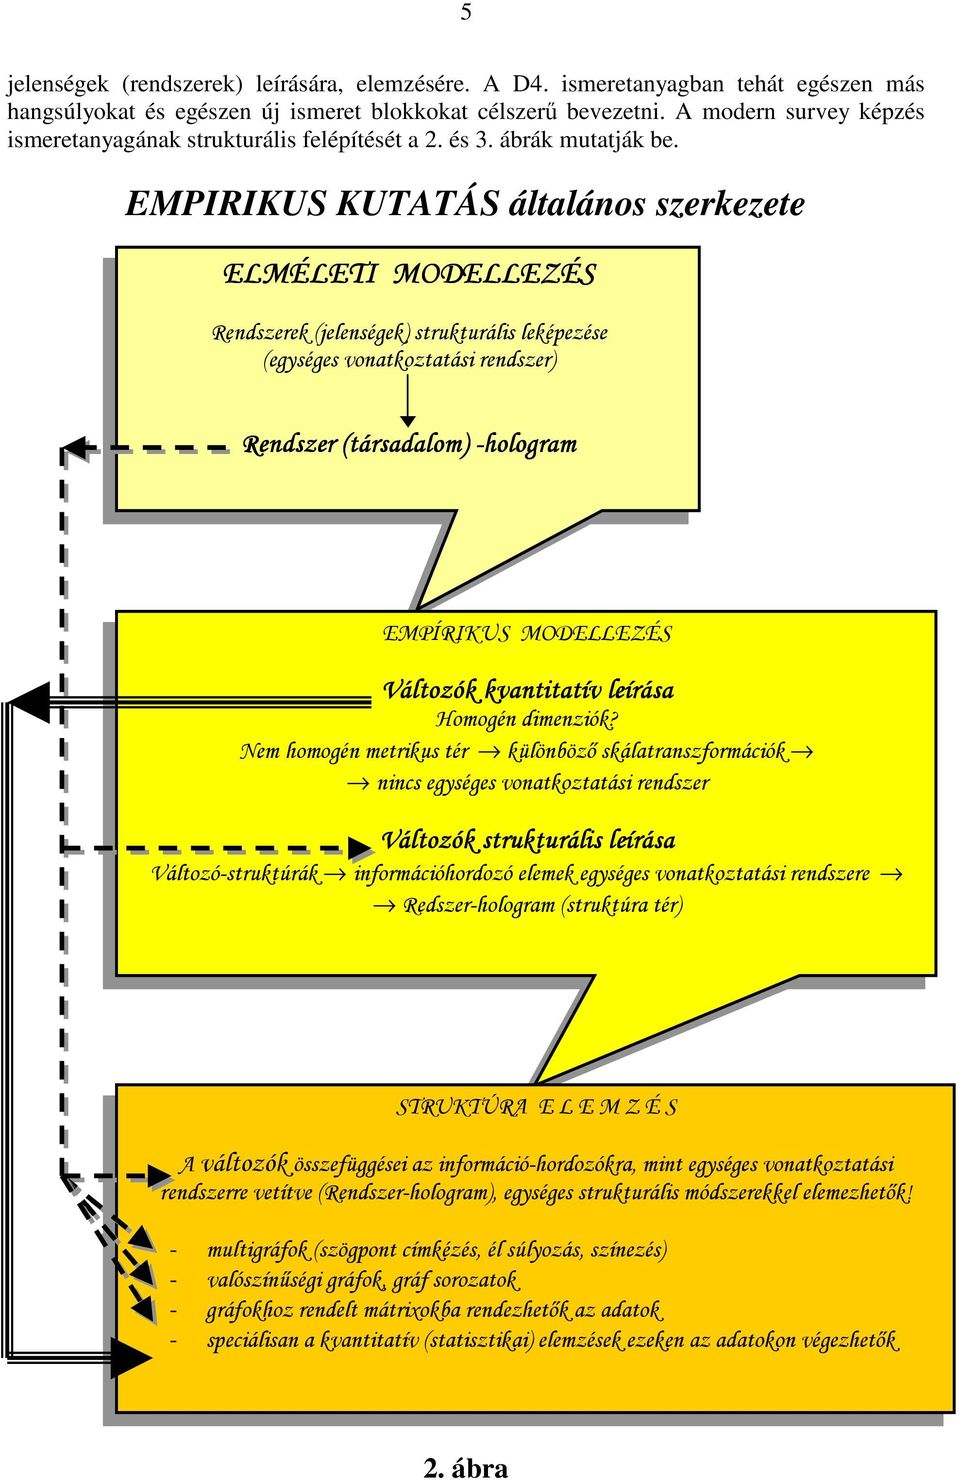 EMPIRIKUS KUTATÁS általános szerkezete ELMÉLETI MODELLEZÉS Rendszerek (jelenségek) strukturális leképezése (egységes vonatkoztatási rendszer) Rendszer (társadalom) -hologram EMPÍRIKUS MODELLEZÉS